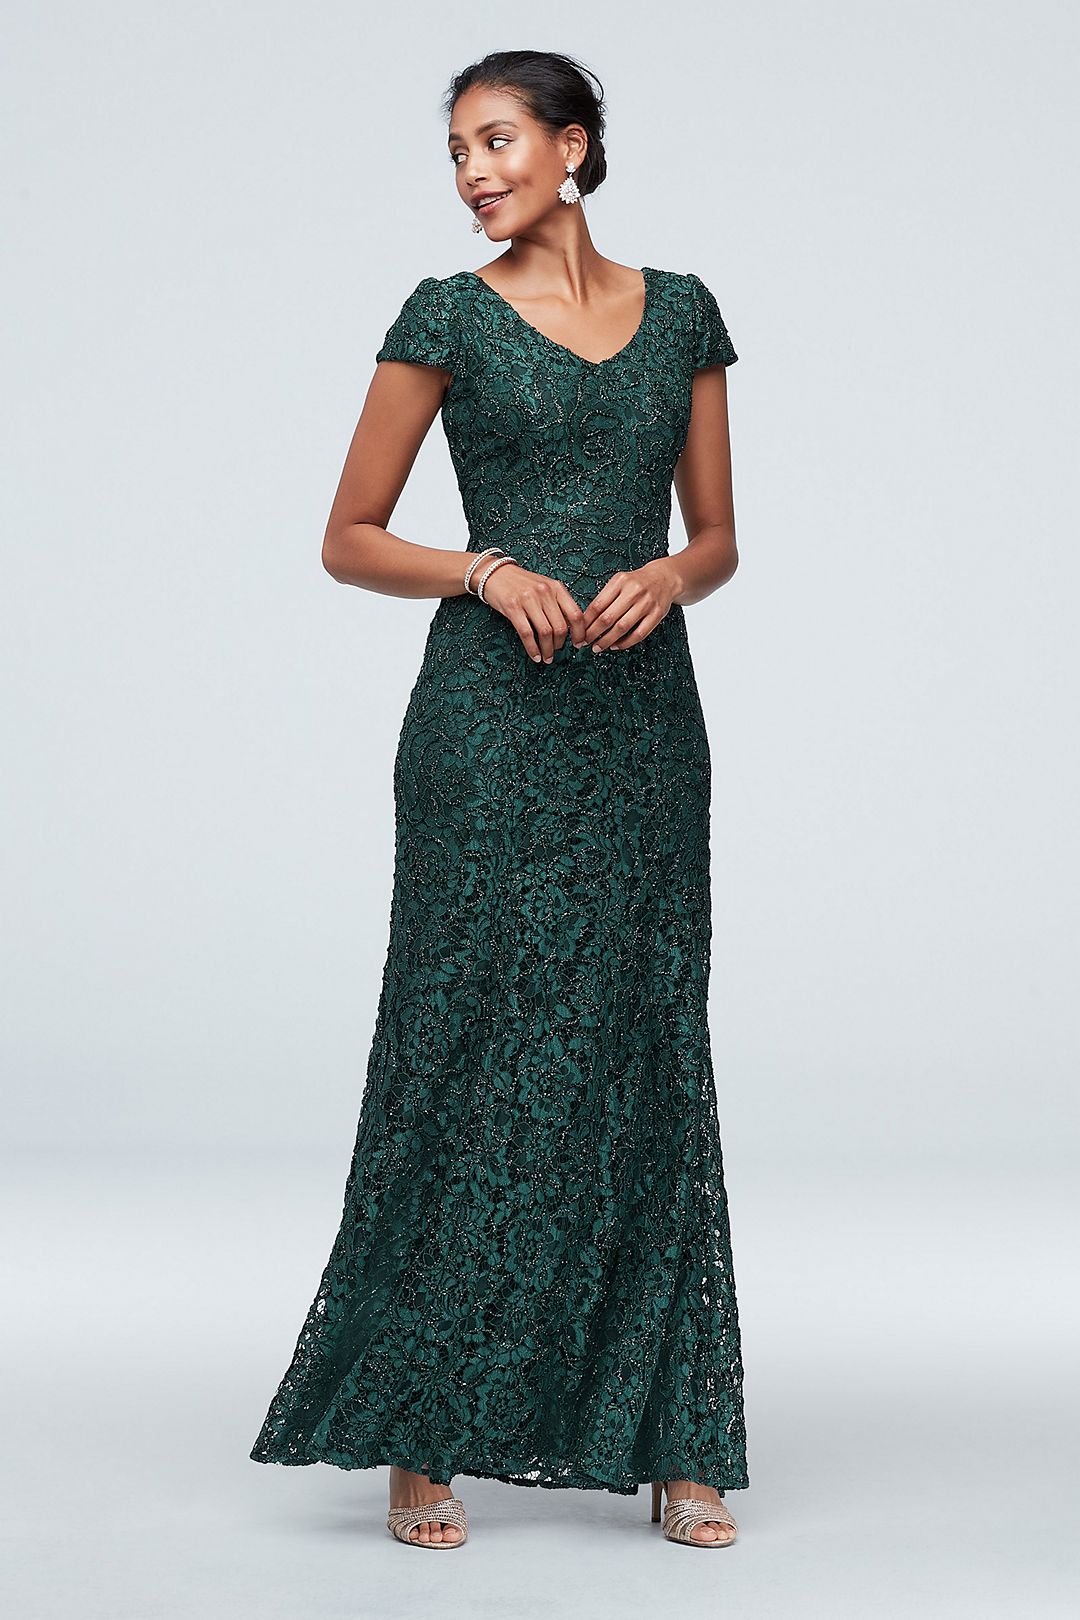 Sequin Brocade Embellished 3/4 Sleeve Dress